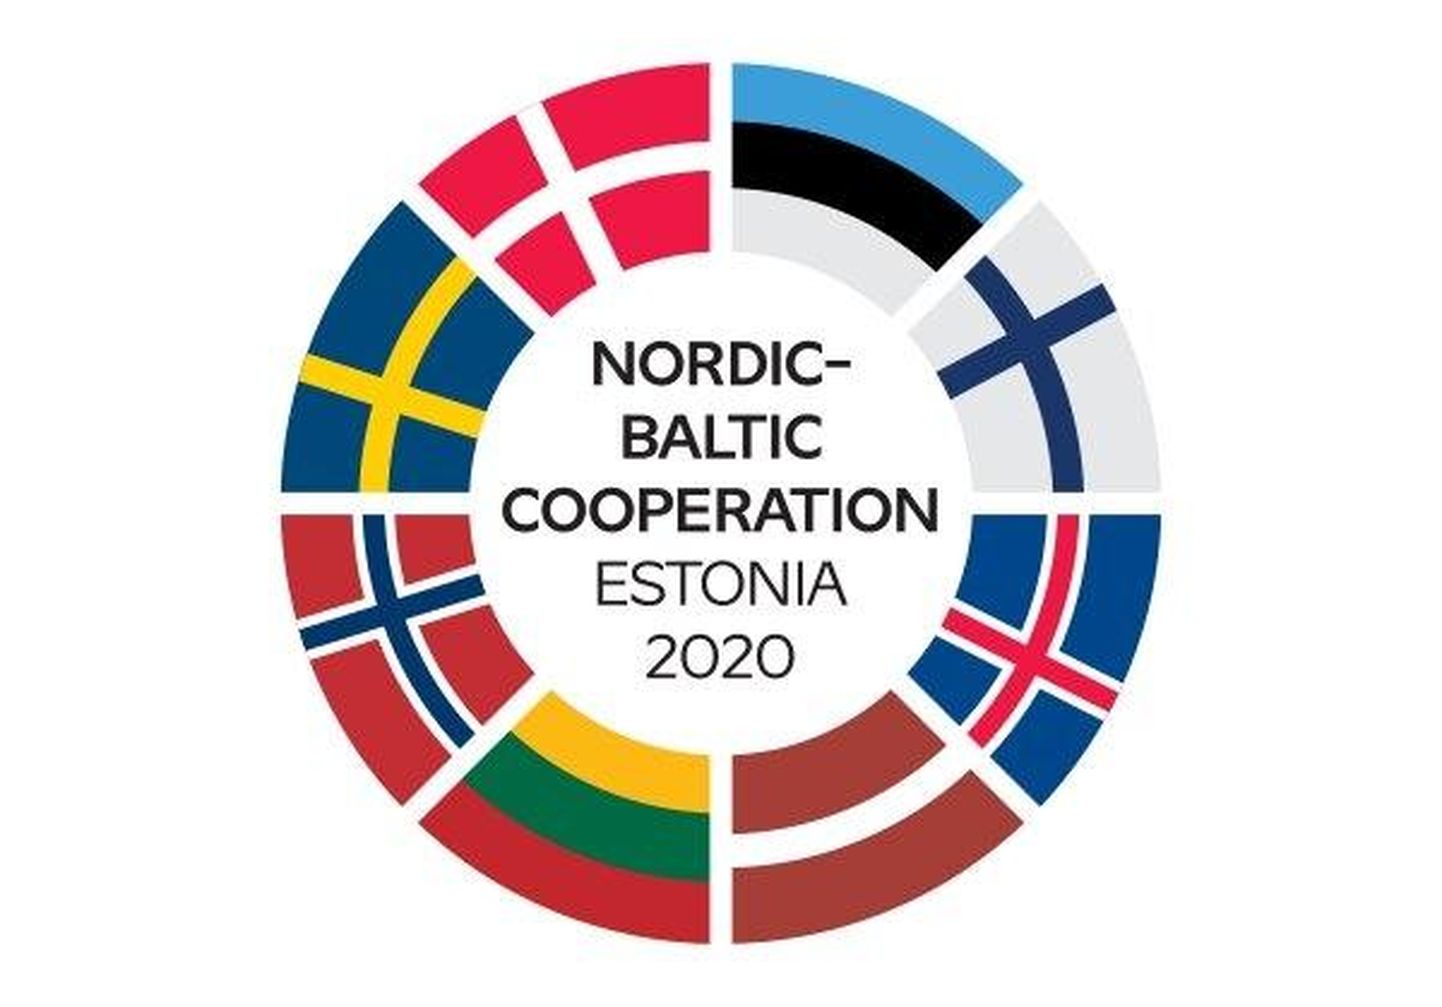 Põhjamaade ja Balti riikide piirkondliku koostööformaadi Eesti eesistumise logo.